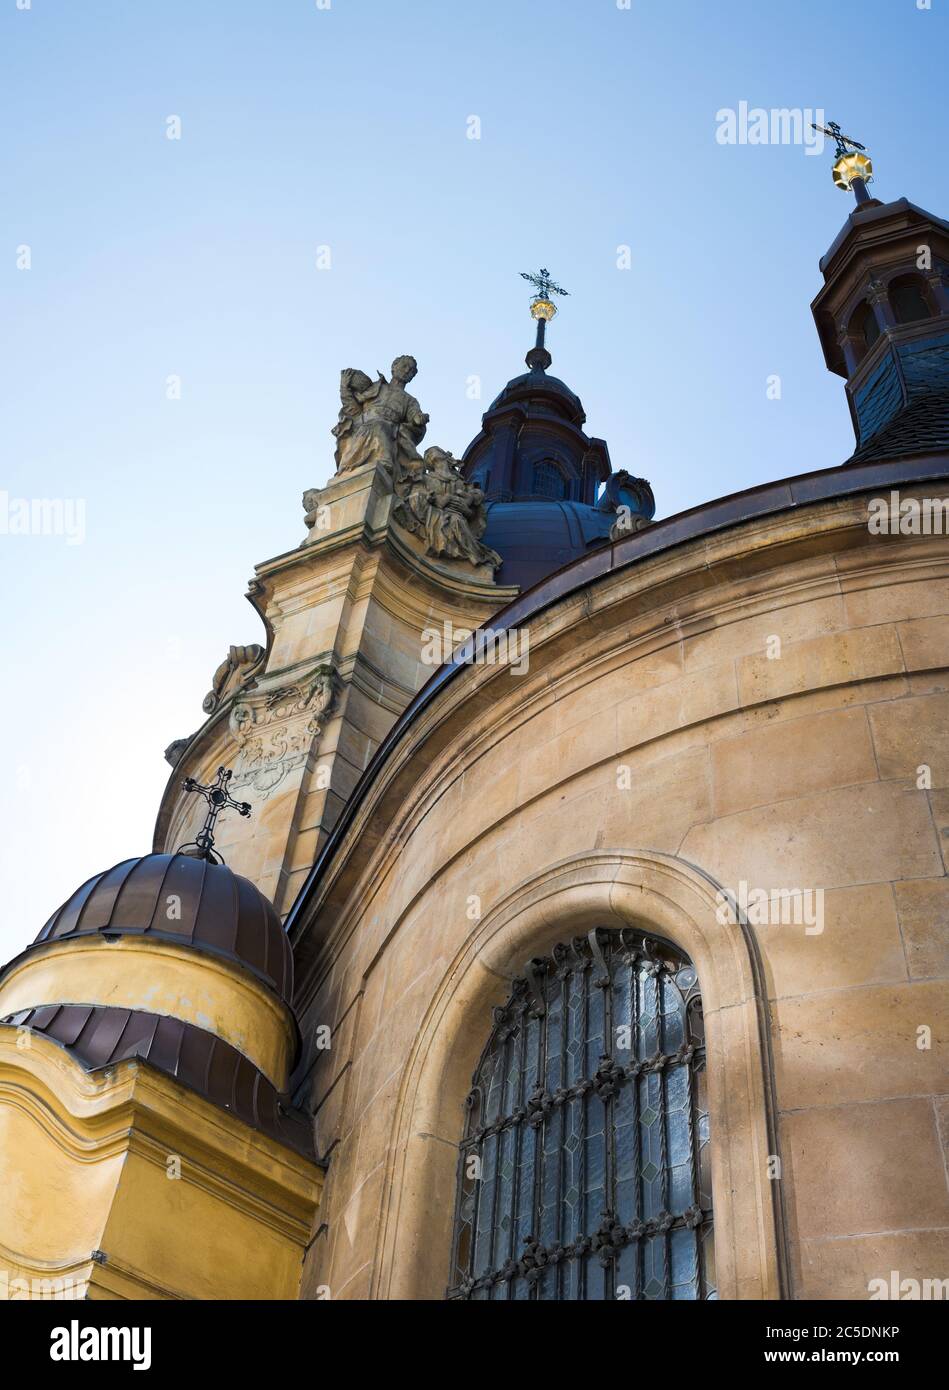 Cappella di San Sarkander, Olomouc, Repubblica Ceca / Czechia, Europa Centrale - edificio sacrale in stile neo-barocco. Dettagli dell'architettura Foto Stock